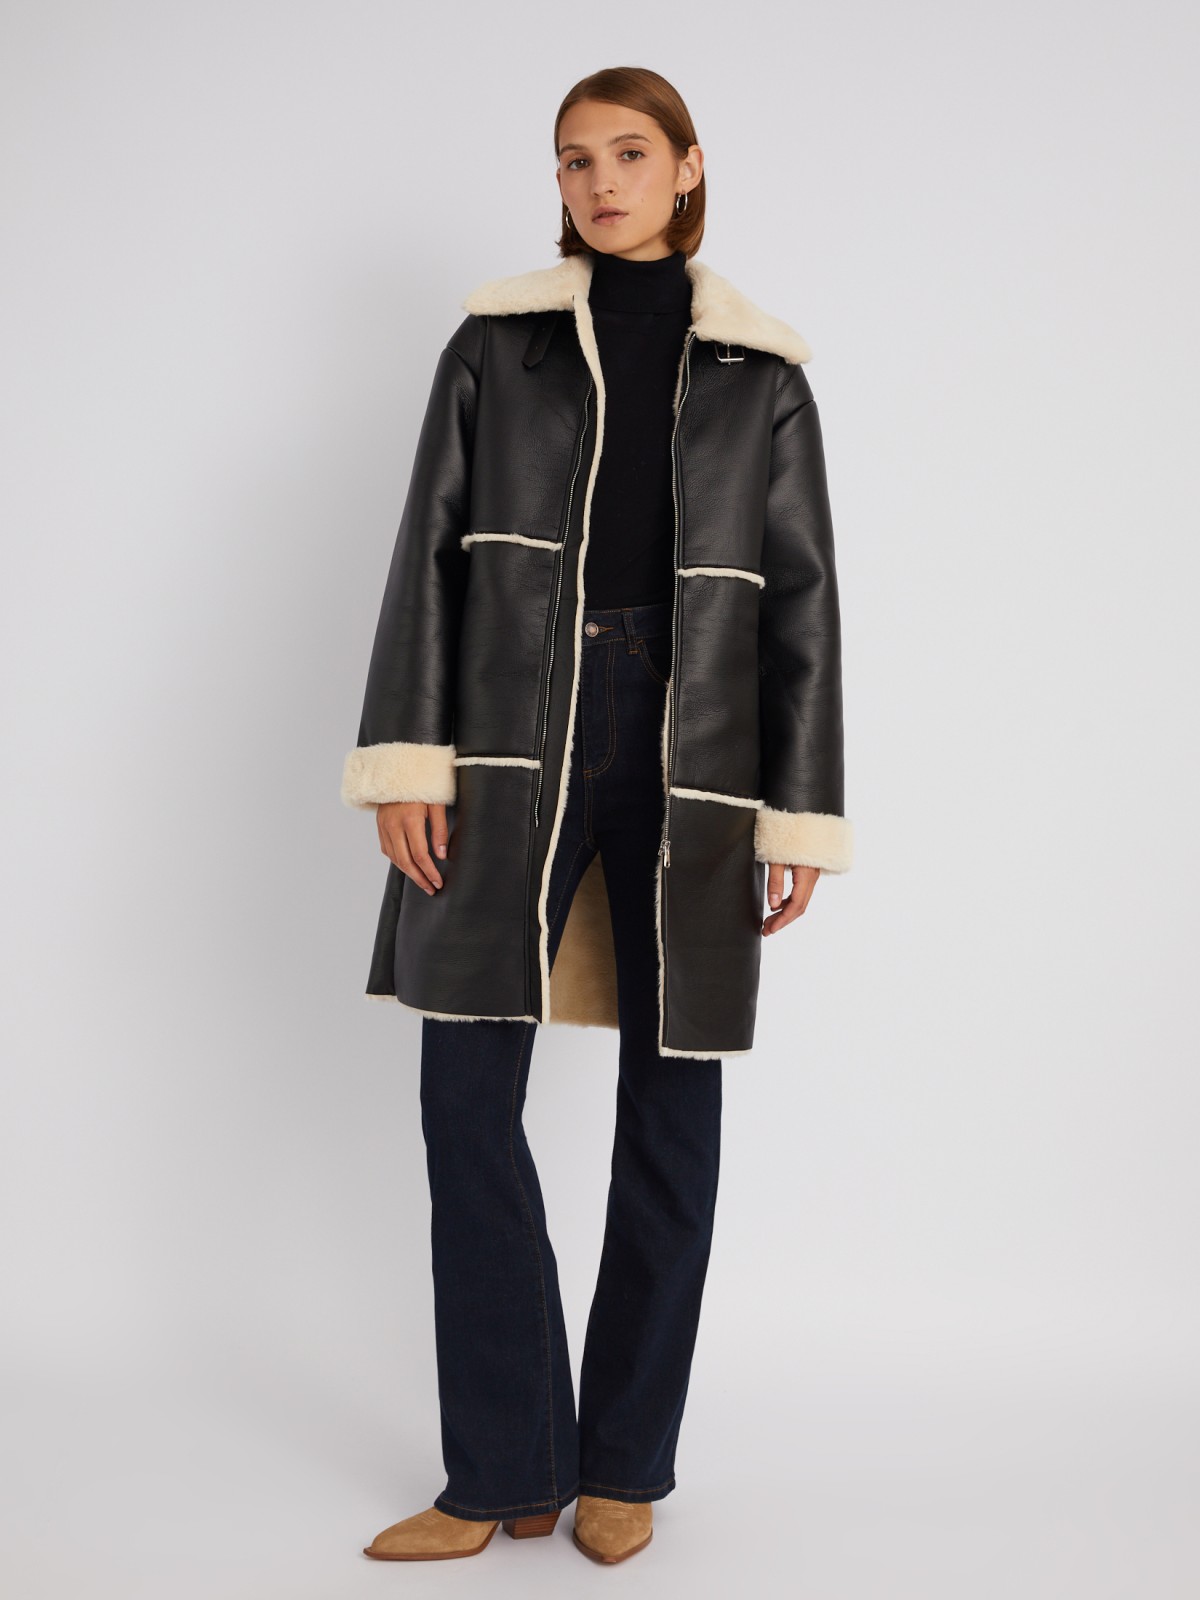 Длинное тёплое пальто-дублёнка из экокожи с искусственным мехом по подкладке zolla 023335550084, цвет черный, размер M - фото 2